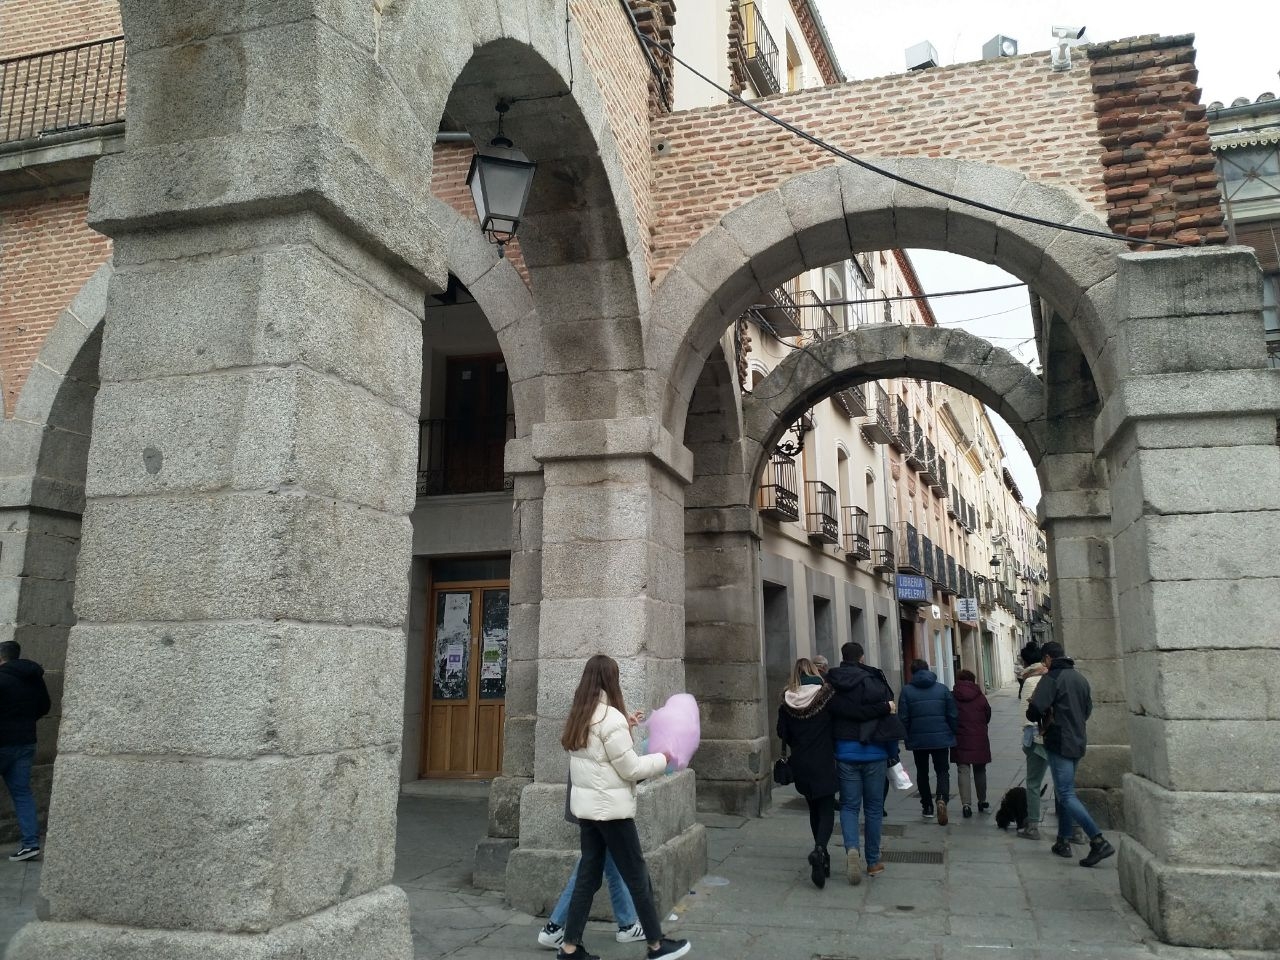 Крепостная стена и исторический центр Авилы Авила, Испания